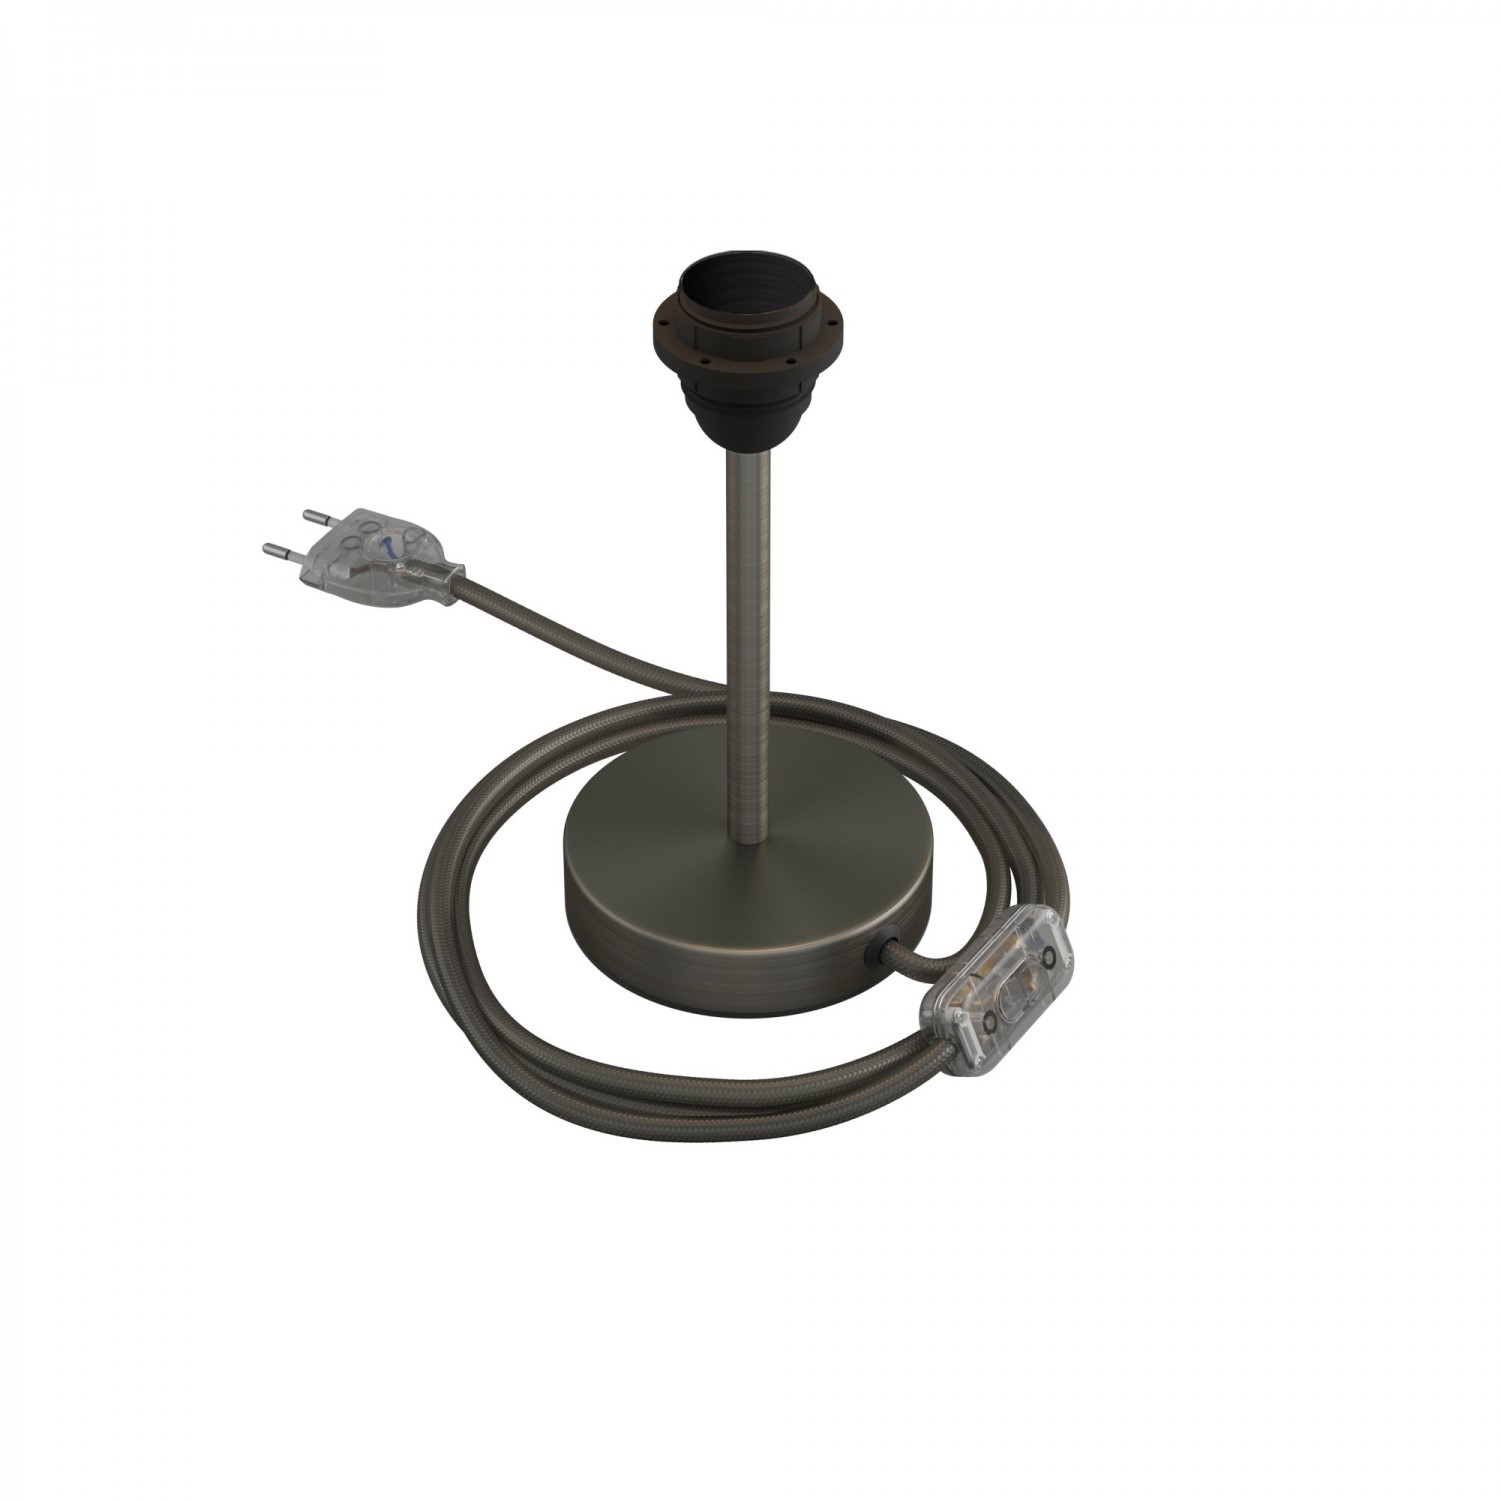 Alzaluce till lampskärm - Bordslampa i metall